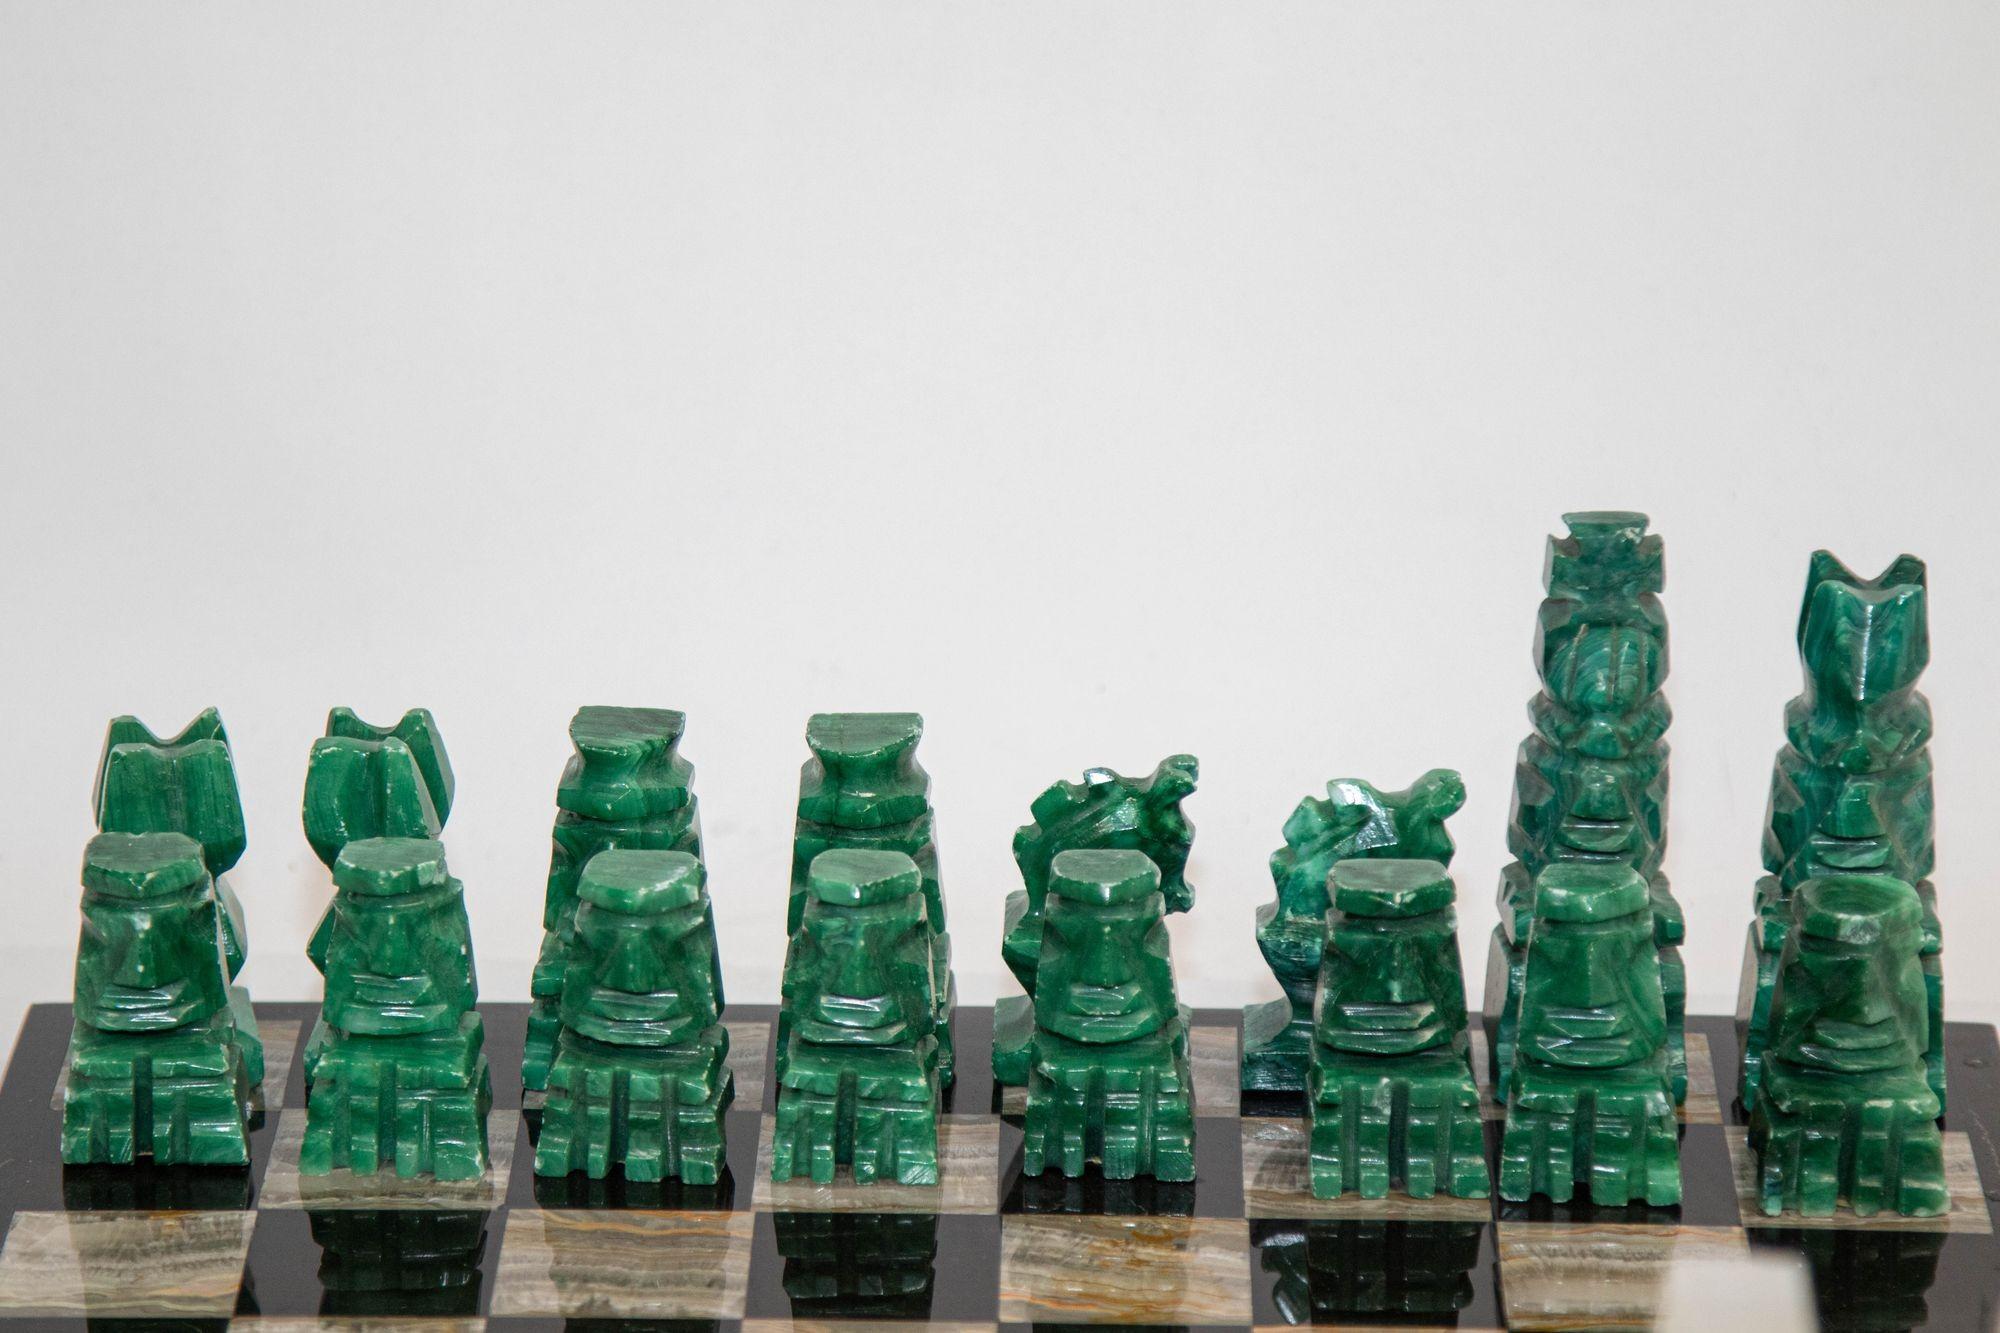 Grand jeu d'échecs vintage en marbre avec pièces en onyx vert émeraude sculptées à la main 7